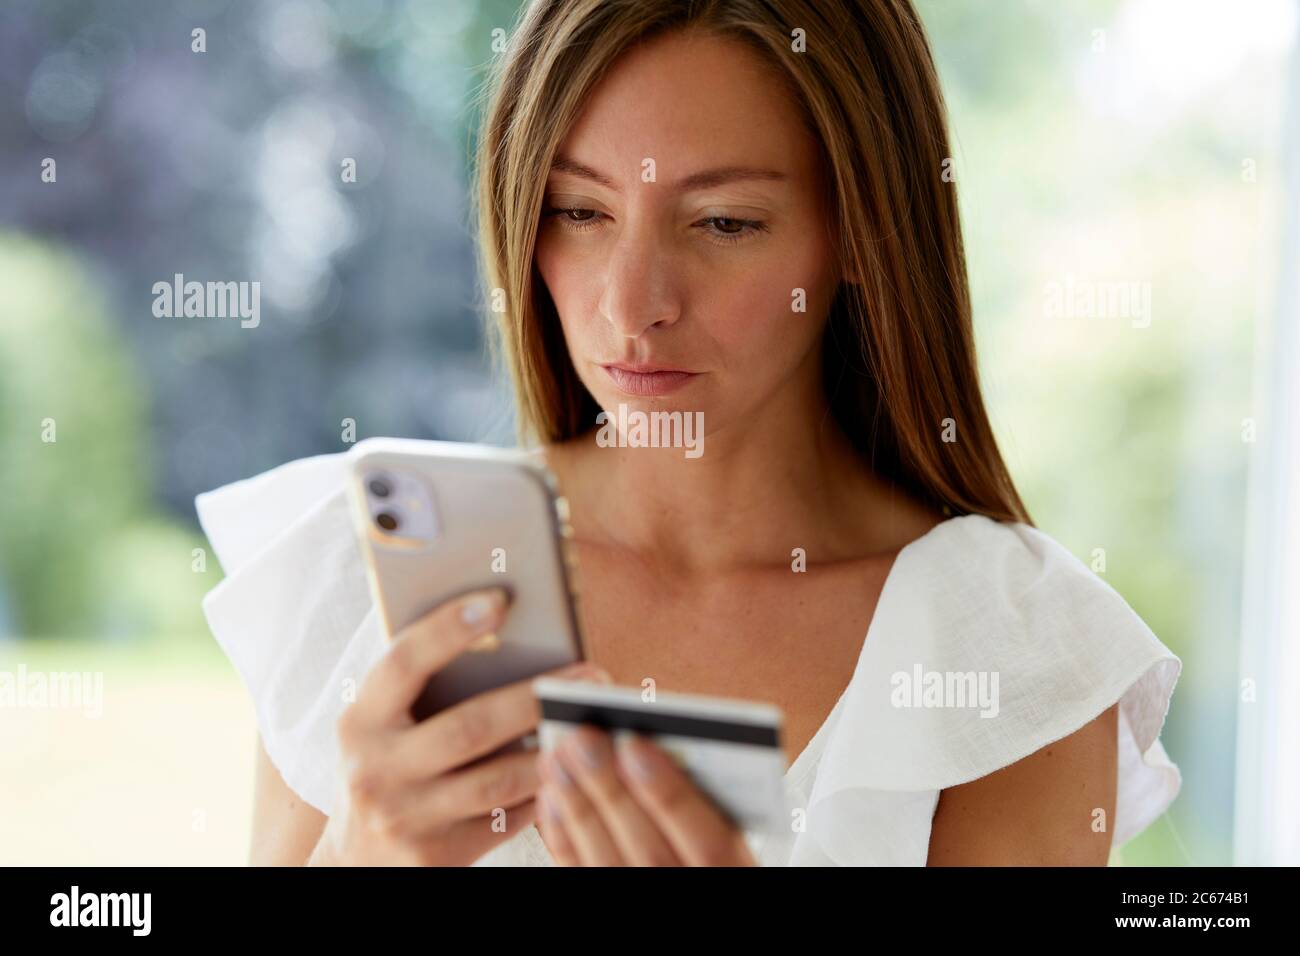 Frau, die auf ihr Telefon und ihre Kreditkarte schaut Stockfoto